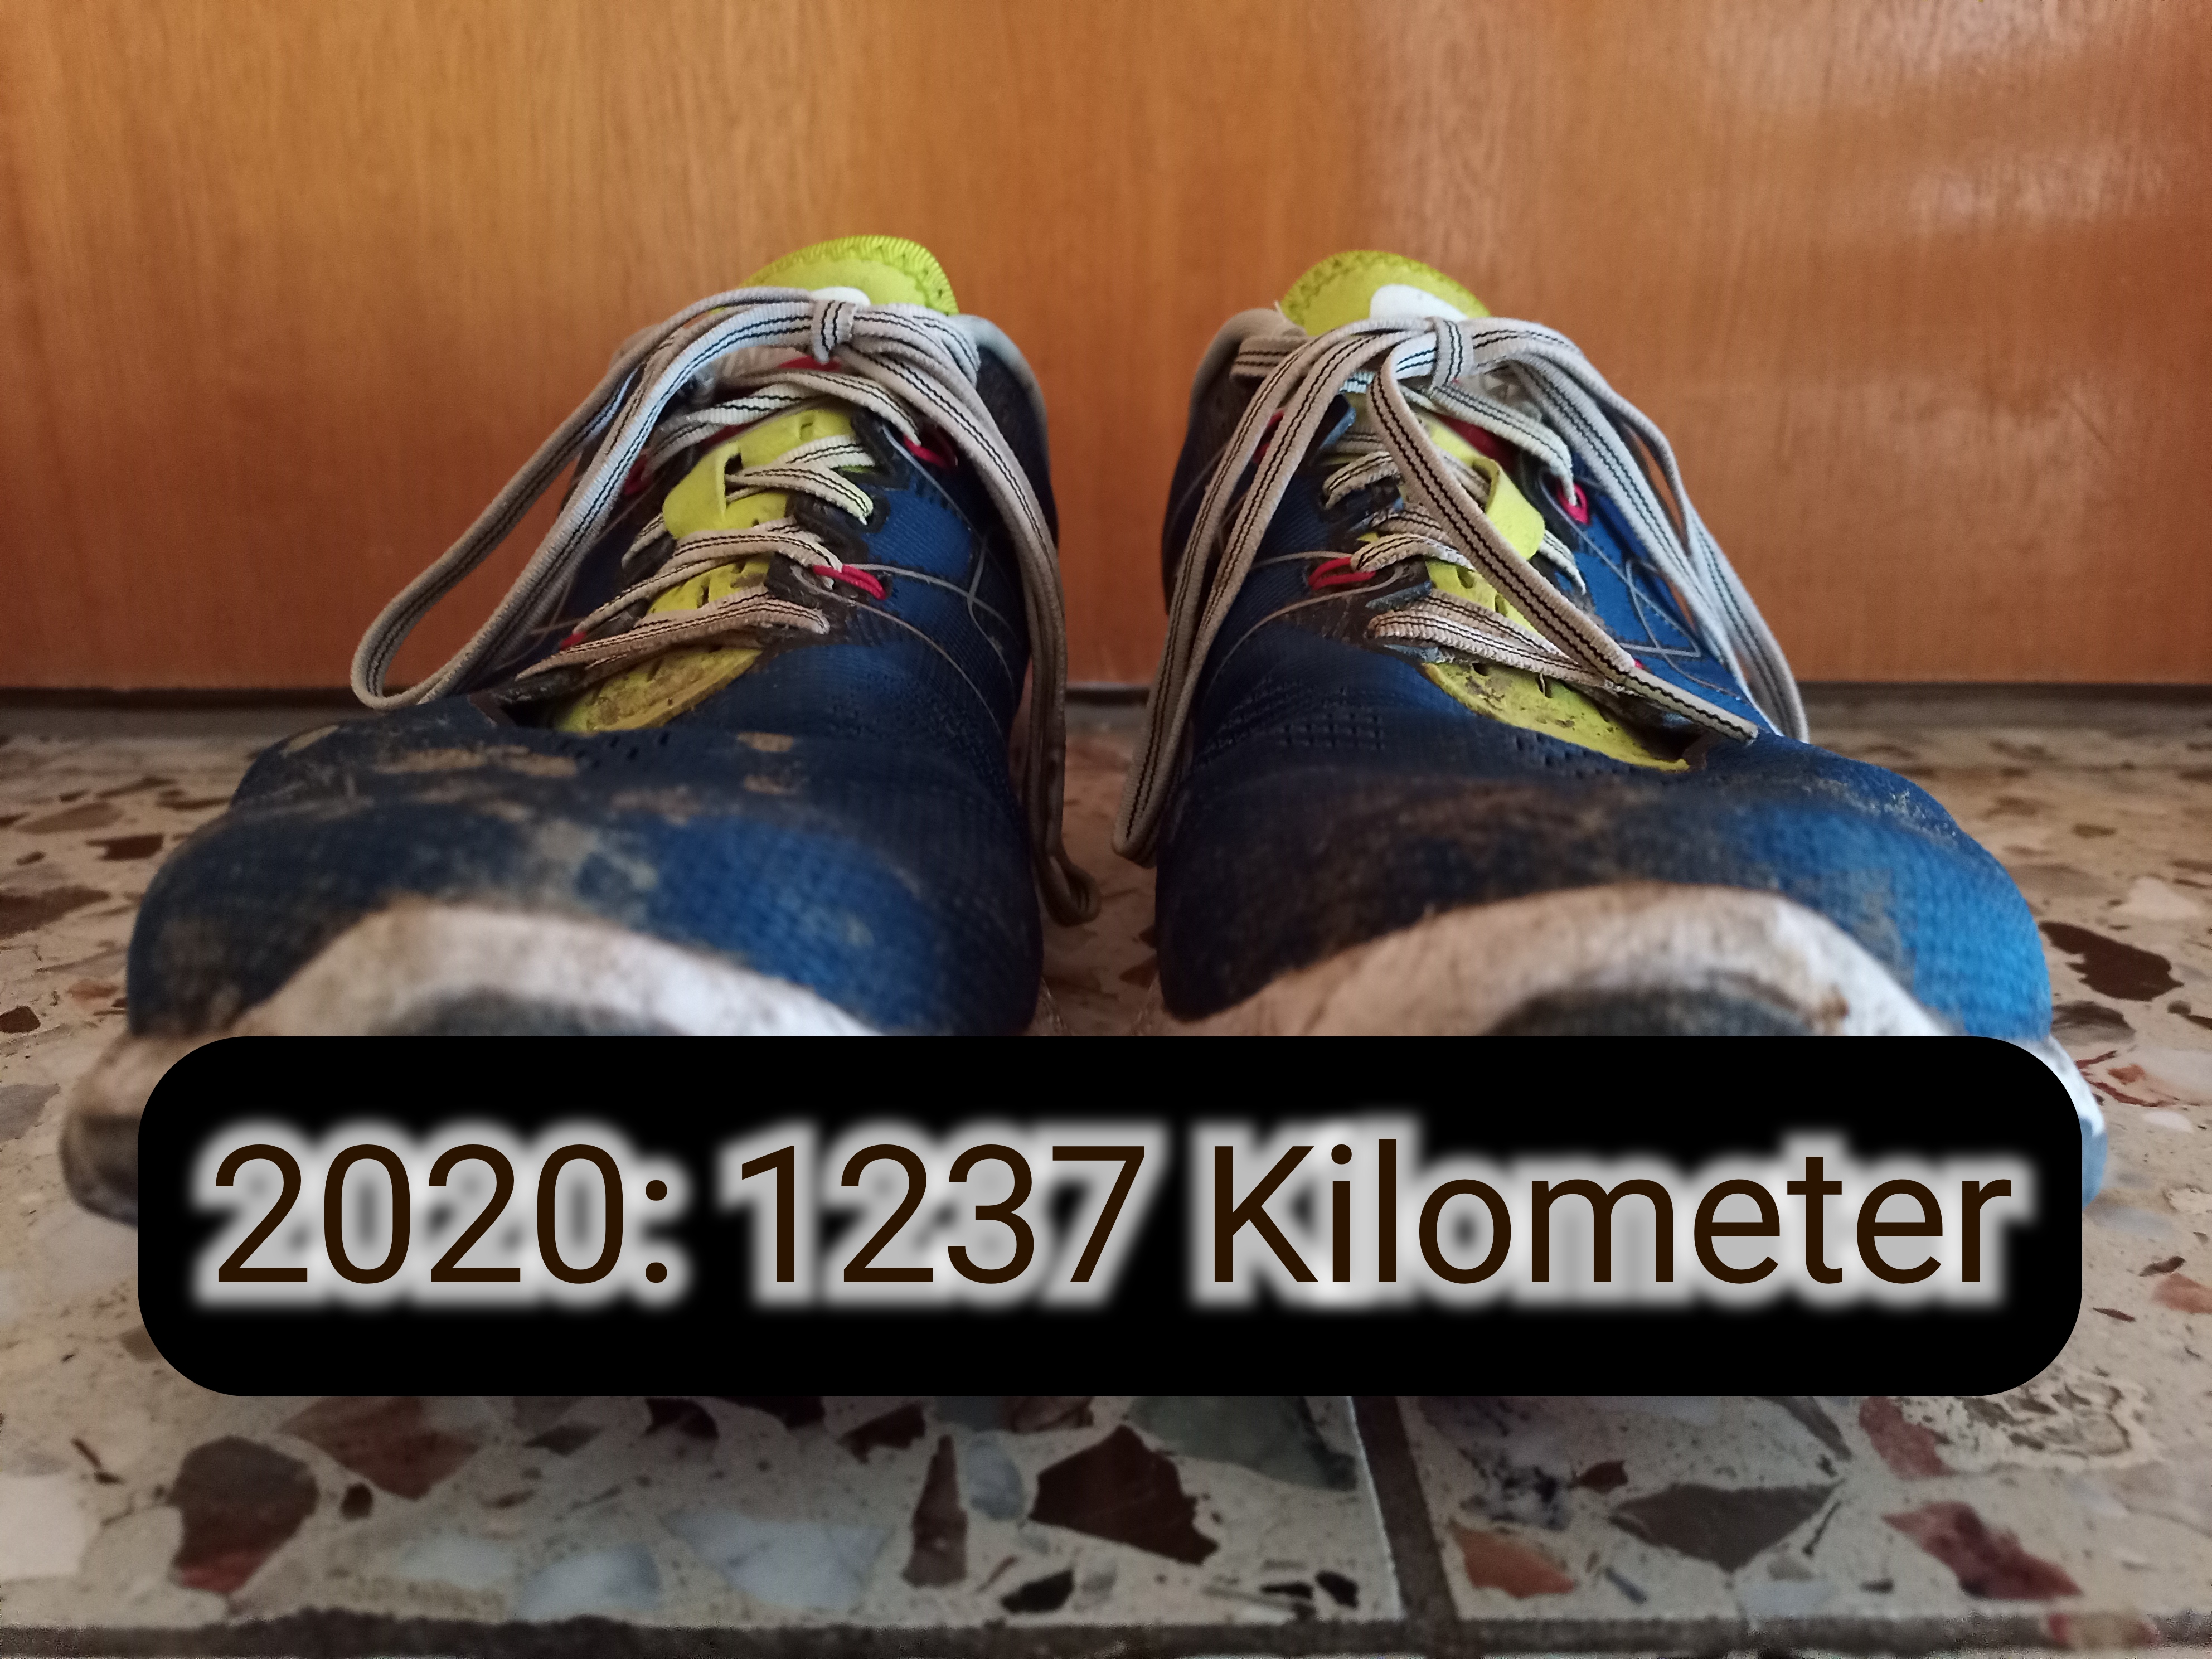 Ein Paar Laufschuhe mit der Unterschrift "2020: 1237 Kilometer"